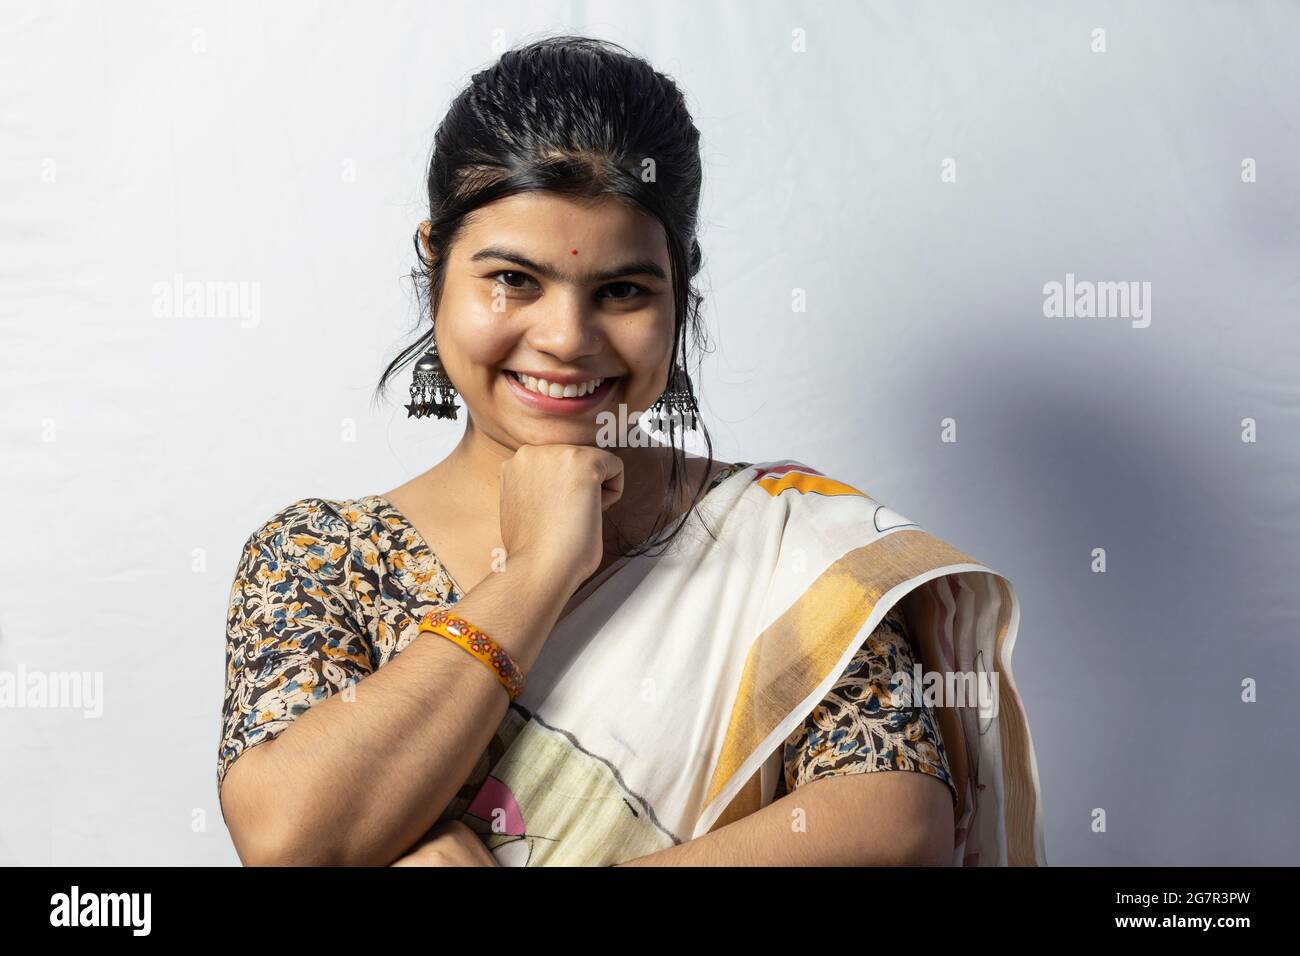 Isolée sur fond blanc une femelle indienne en saree sourit à l'appareil photo avec la main sous le menton pose sur fond blanc Banque D'Images